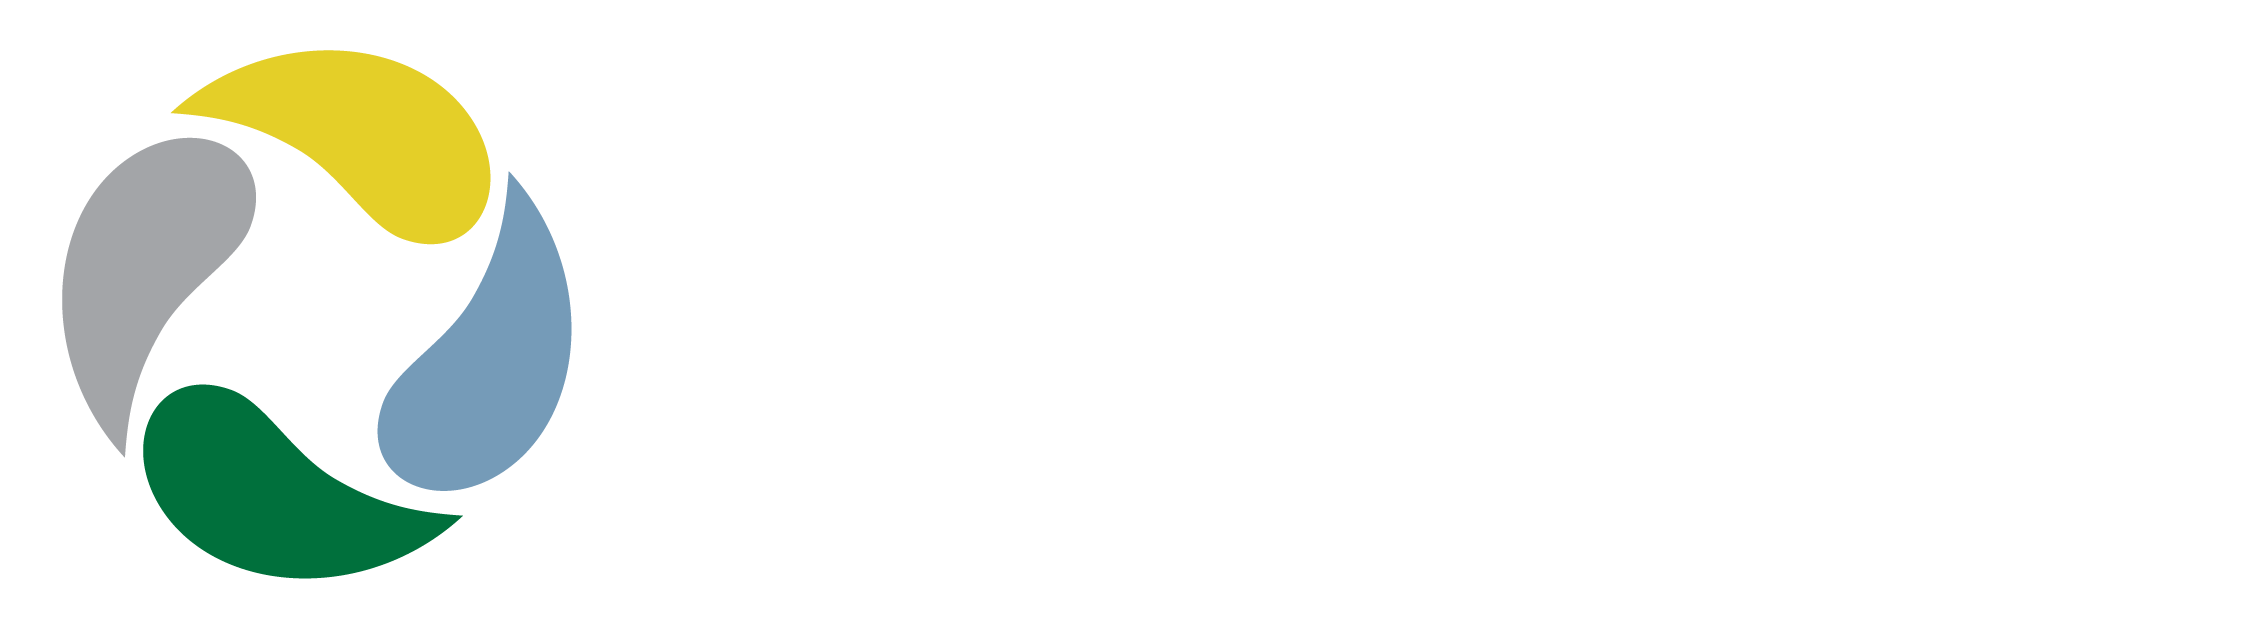 moffitt